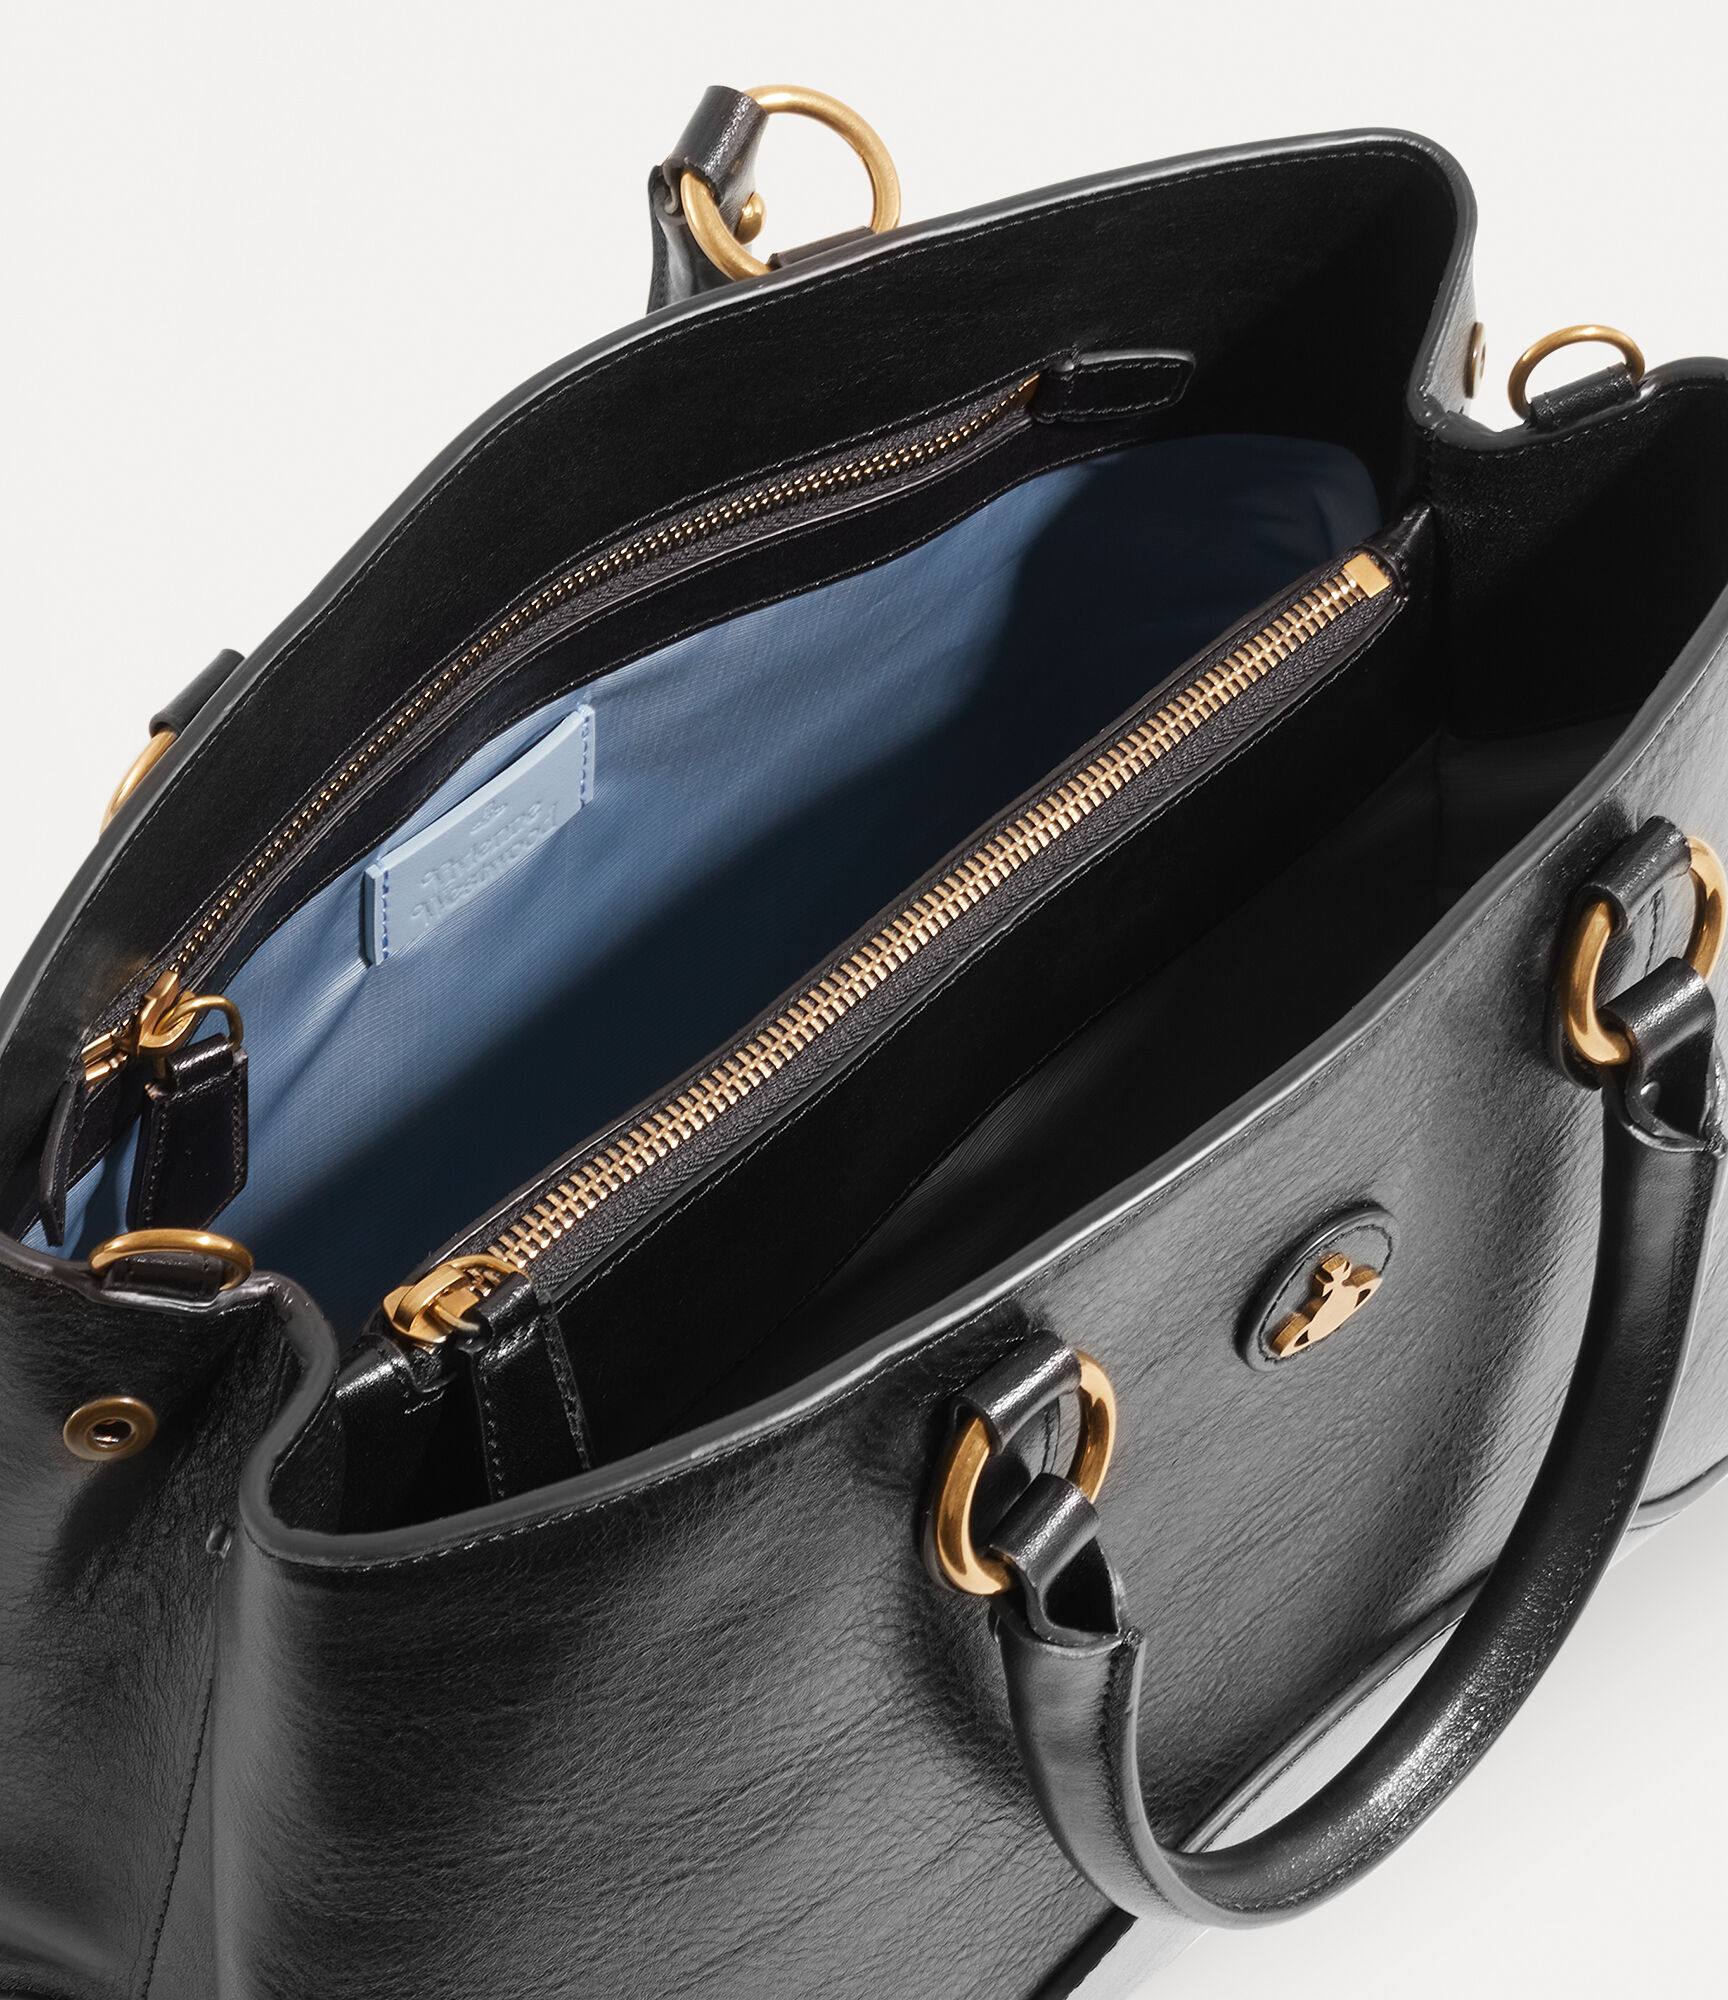 Britney Medium Handbag in BLACK | Vivienne Westwood®